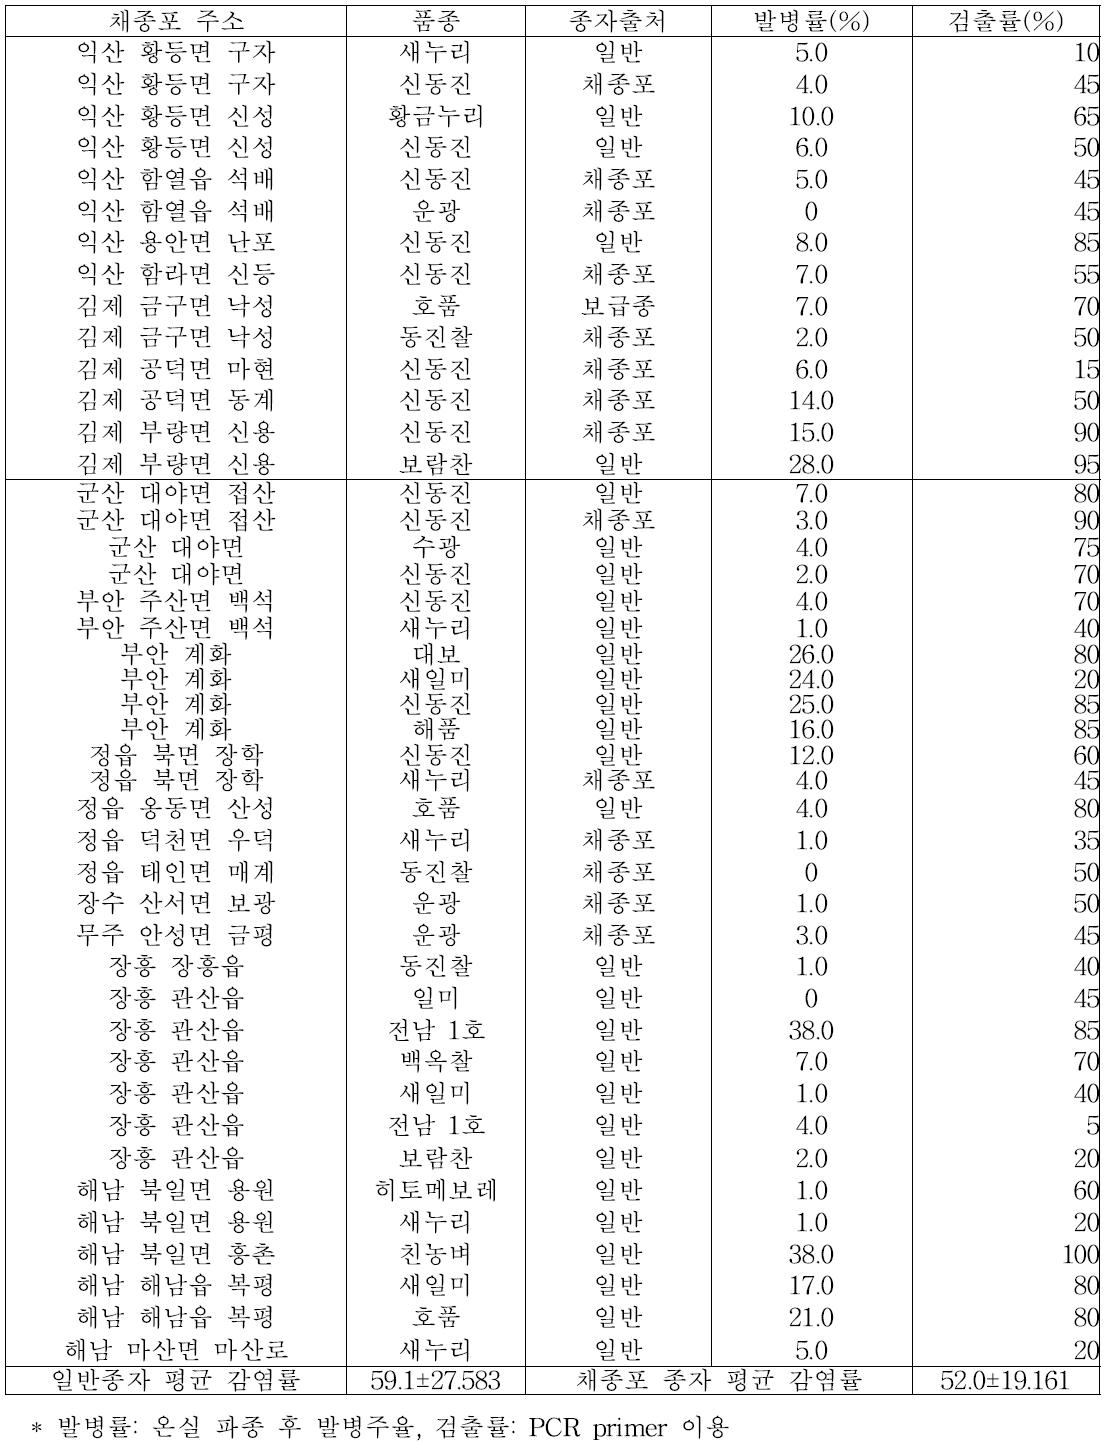 2014년 전북지역 주요 채종포 및 인근농가 수집 벼 종자의 키다리병 병원균 검출률 및 유묘 발병률